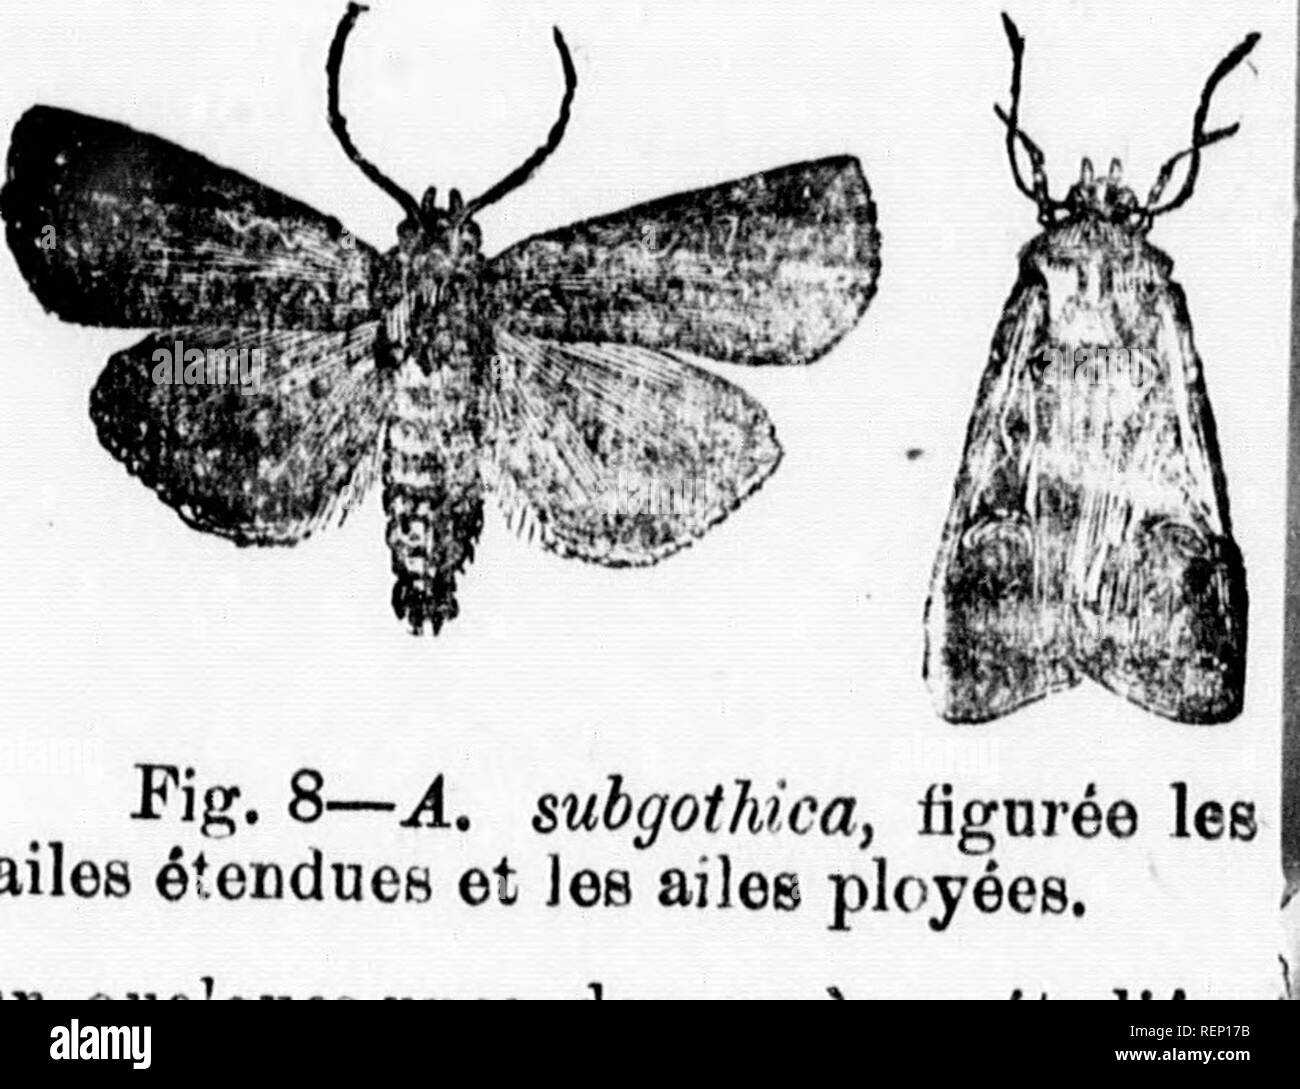 . Rapport de l'entomologiste (James Fletcher, M.S.R.C.) 1885 [microforme]. Insectes nuisibles; Insect pests. Figj YâiÃ¢. Ypsilon] 4, oheDille: 5, papillon. ailes. Manquant de itnfceigncuitnfs conopleth sur quelquct-uncB des eBiÃ´ccs Ã©tudiÃ©es 1 durant 1 anree, f.usfci bien qui- de gravures, nous remetlone Ã notre procluin rannort des notÃ©e ( Ã©taillÃ©os bui- [es noctuelles. *^ ' Le BÃ®irbcau barrÃ© du conconfbie,â(Z&gt;Ã¹(Ã¨ro//ra vittata, Fab.) Ions et des coreombie-,, jusqu'Ã coq je ces derniers soient devenus uop vii-oureux rourl souffrir de leurs attaques.&quot; r o * | FRUITS. d'i La rÃ Stock Photo